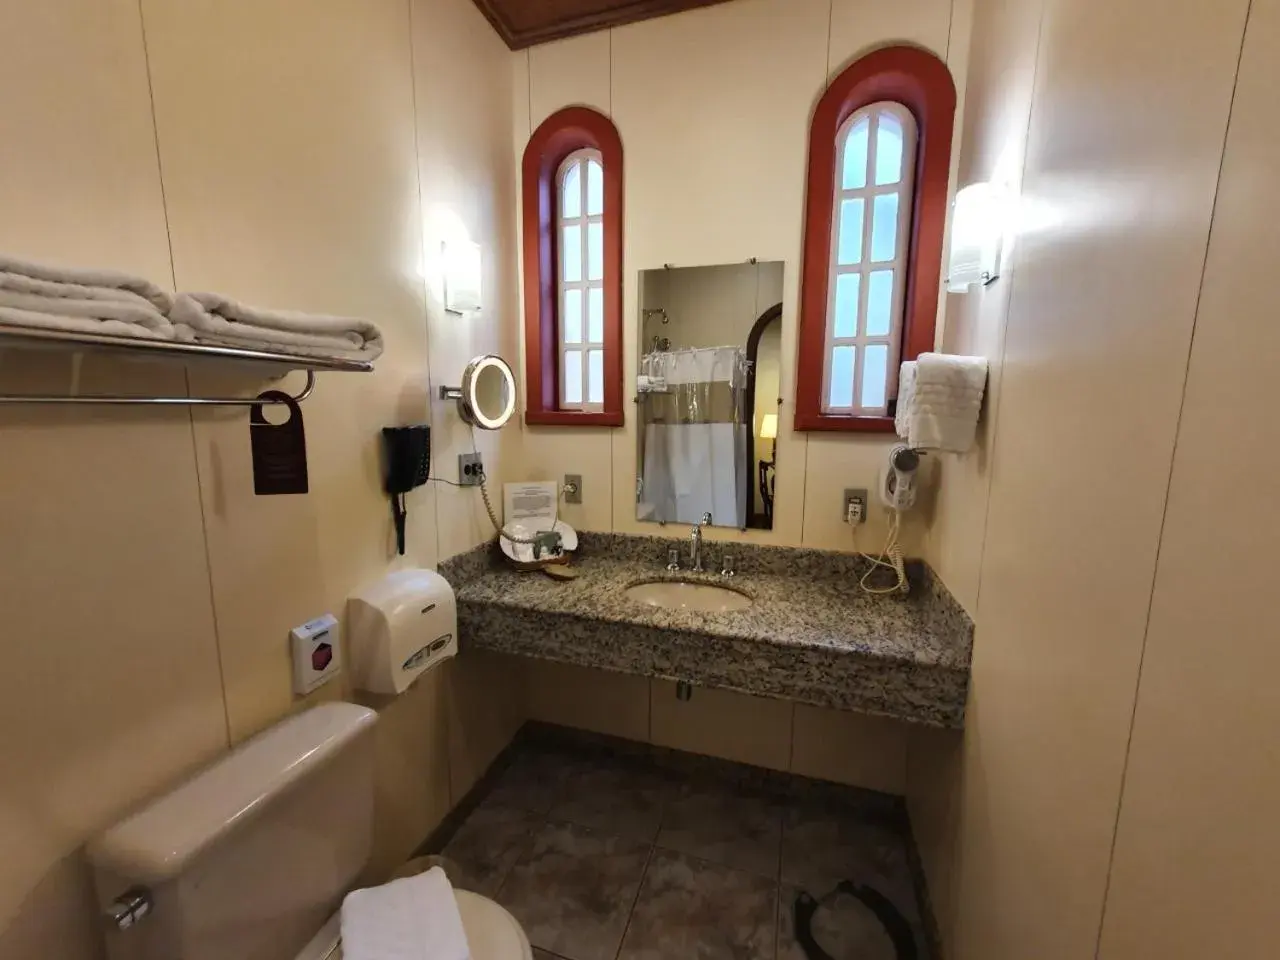 Bathroom in Hotel Pousada do Arcanjo